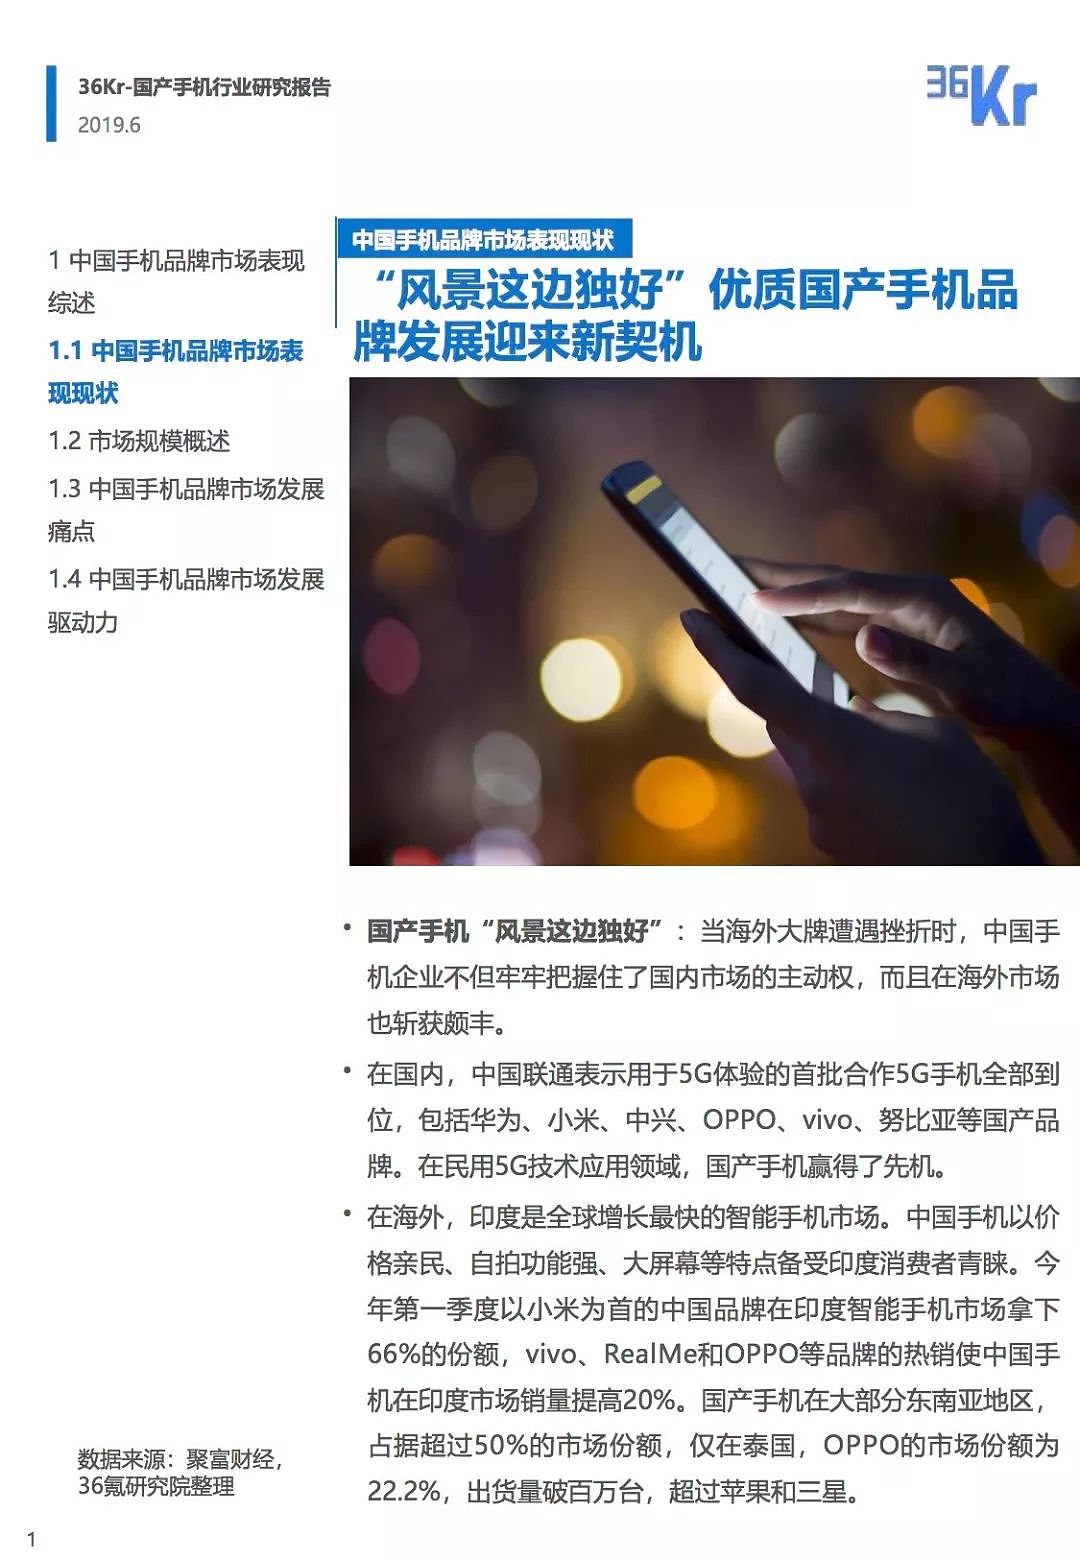 中国手机品牌市场营销研究报告 | 36氪研究 - 6